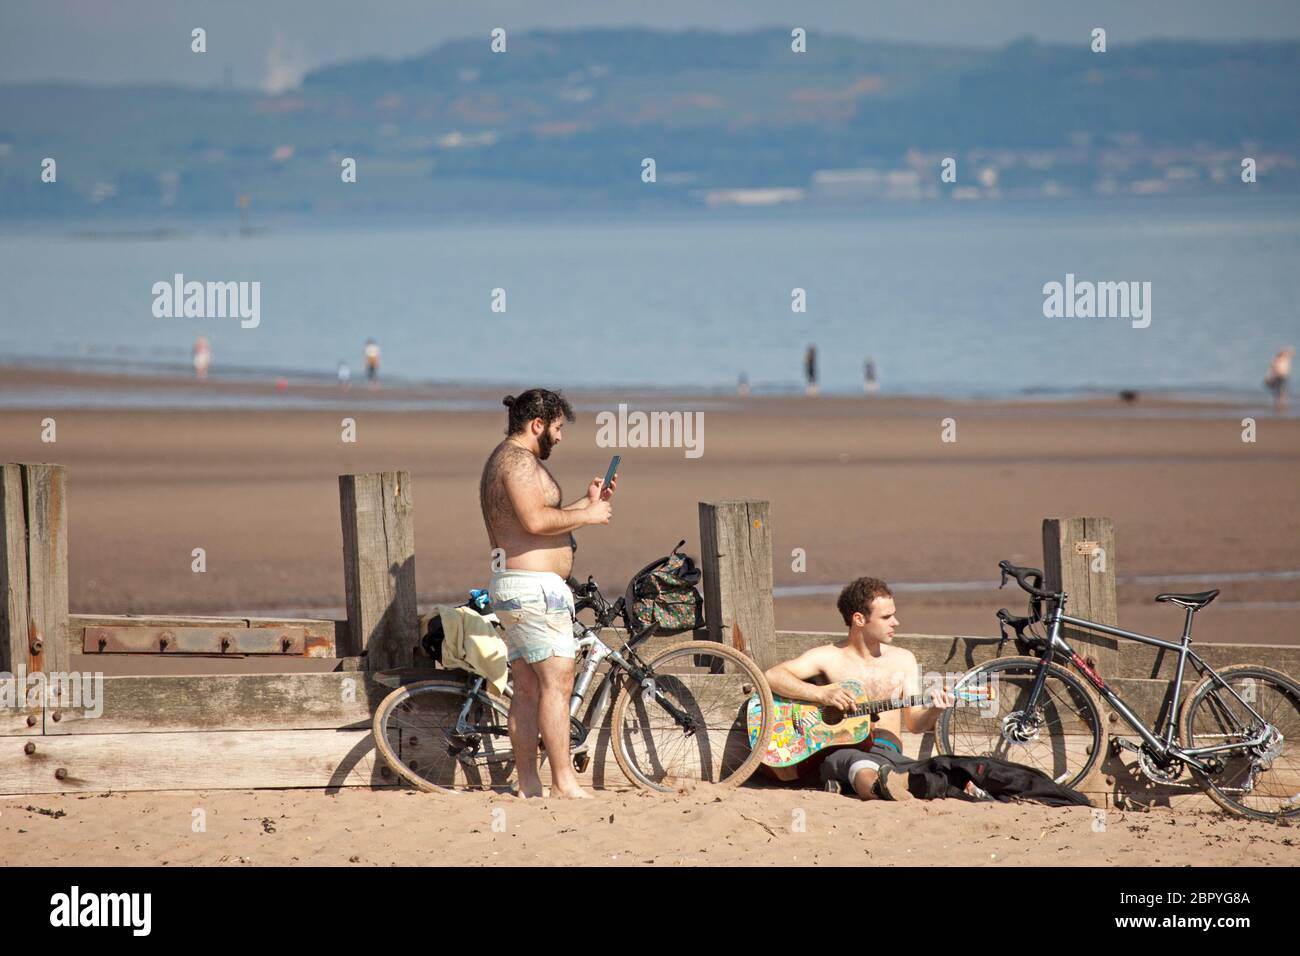 Portobello.Edinburgh, Schottland, Großbritannien. 20 Mai 2020. Ruhiger Start heiß sonnig und 18 Grad Celsius vor 10 Uhr. Zwei Jungs, einer mit Gitarre, legen sich für eine Sonnenbad Session. Stockfoto